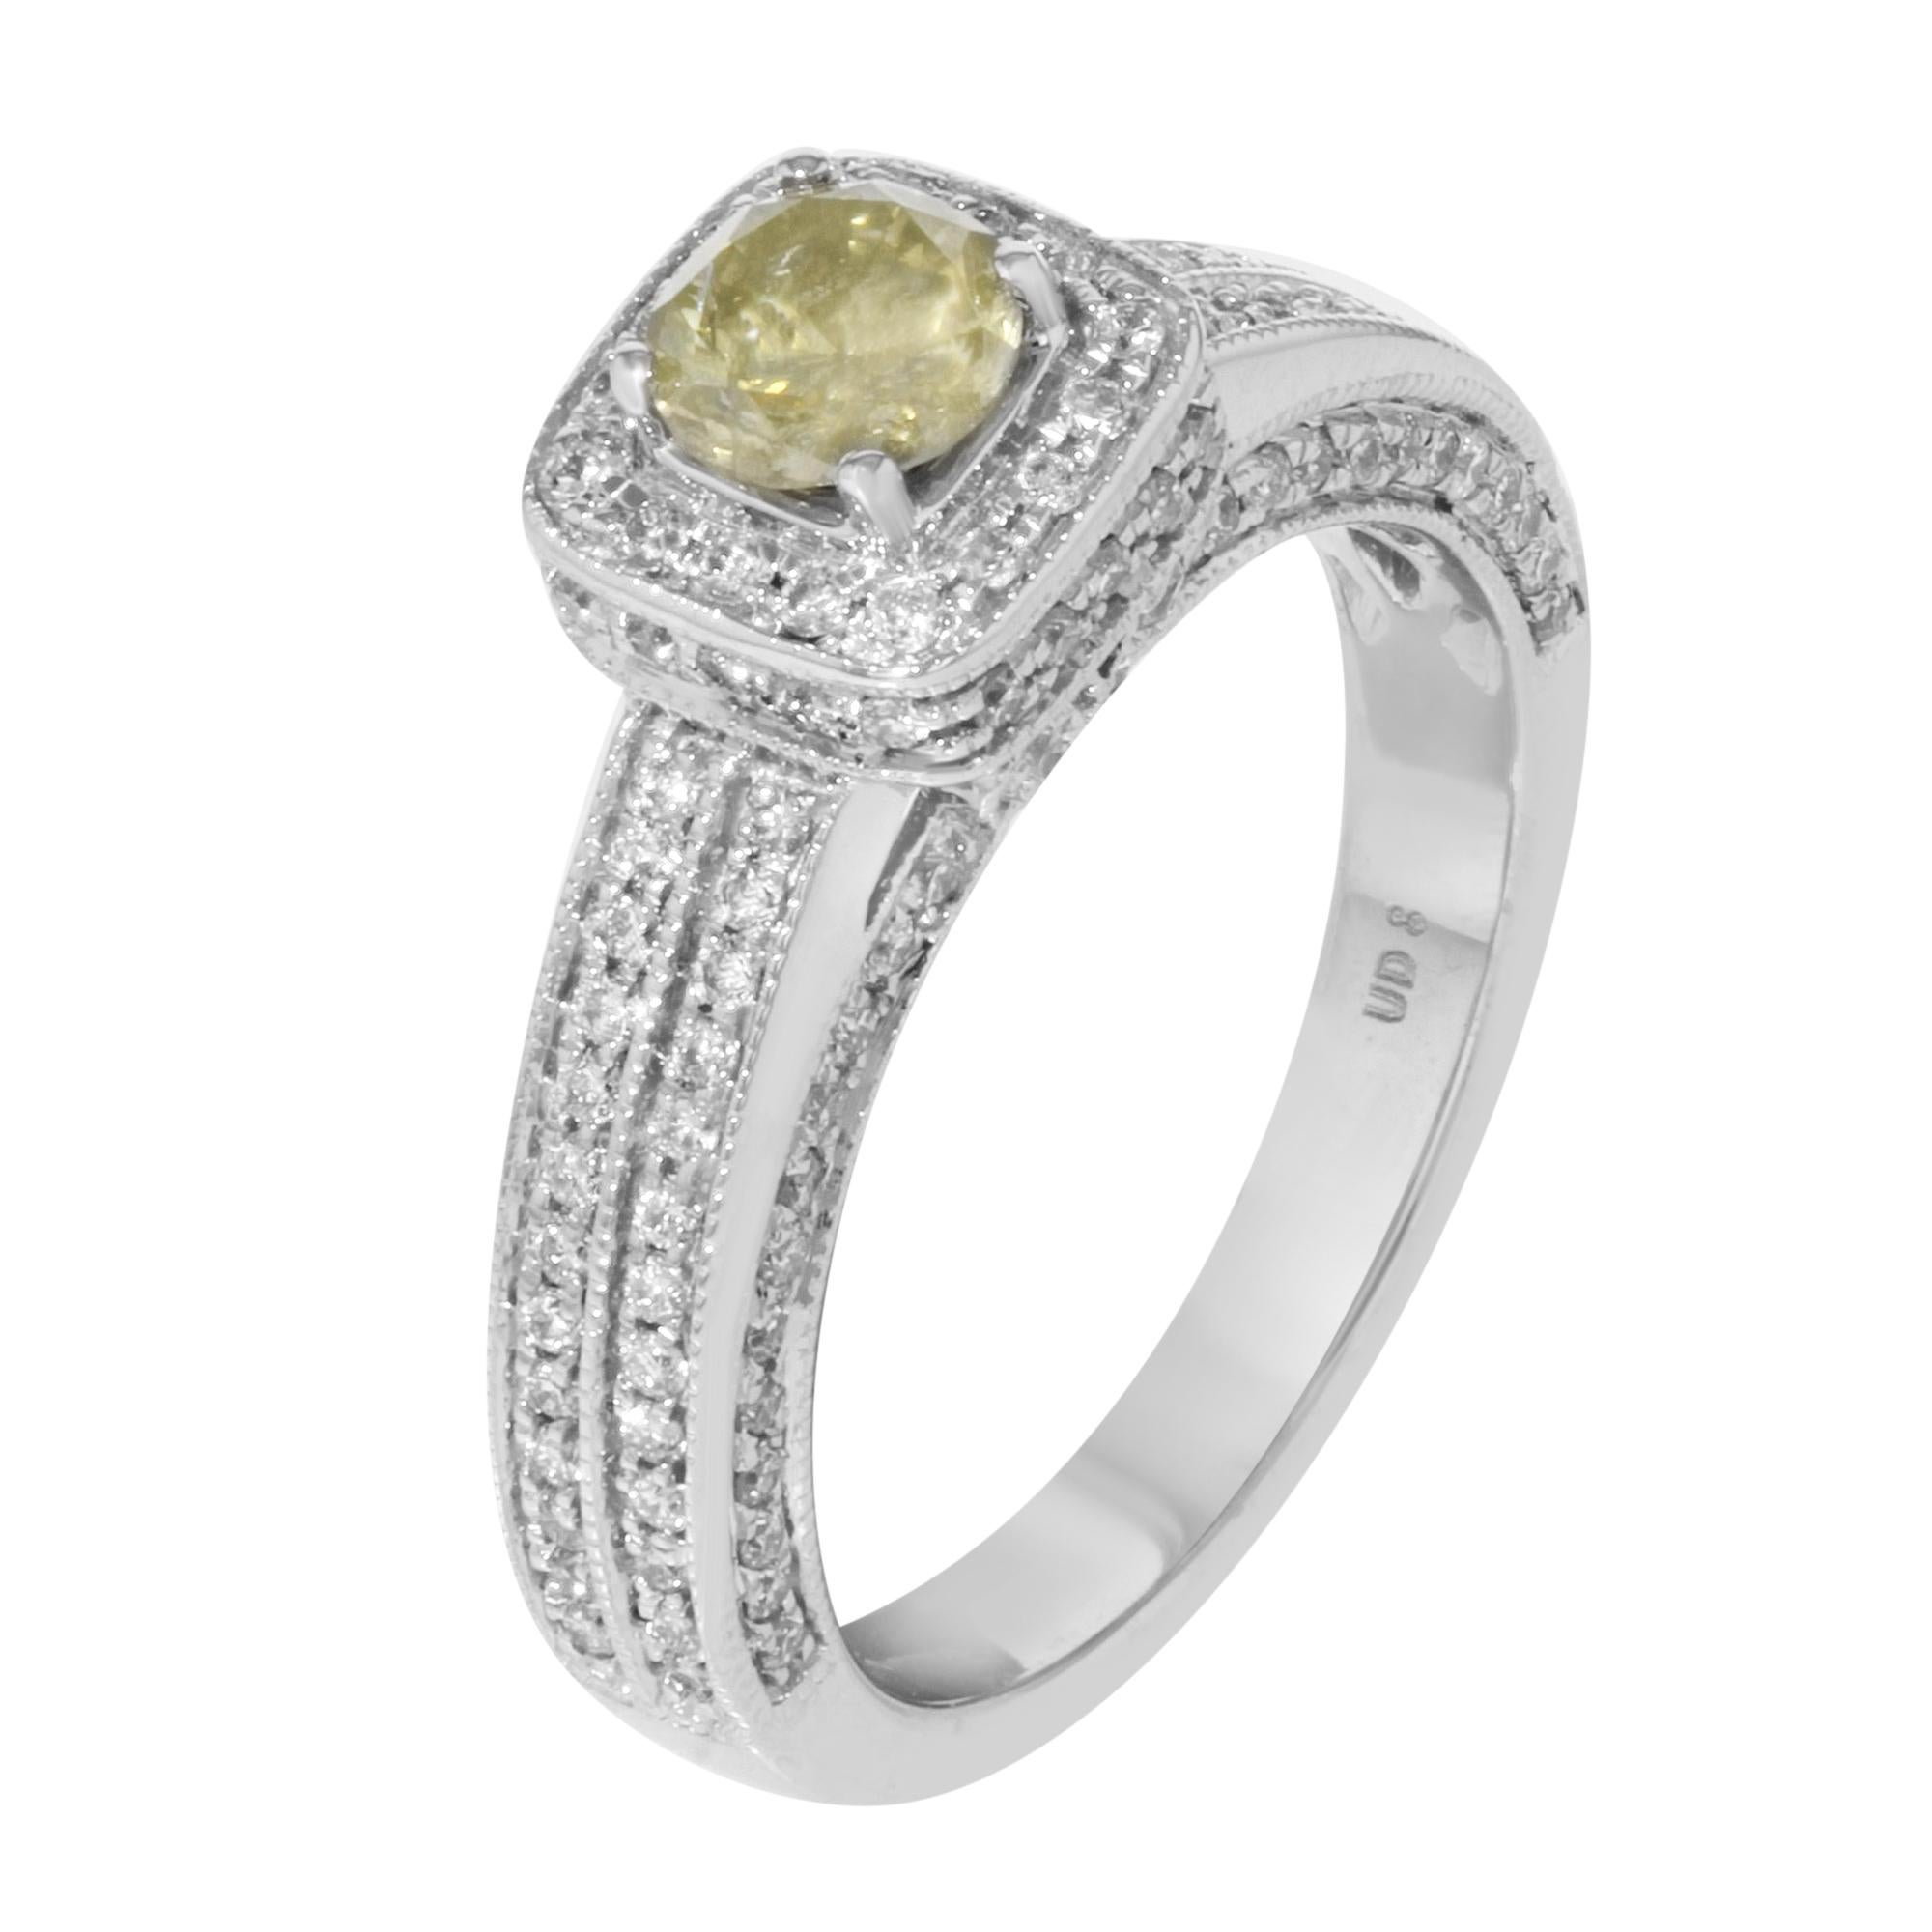 Dieser ausgefallene Halo-Verlobungsring mit gelben Diamanten aus unserer Rachel Koen Bridal Collection könnte eine großartige Option sein, um den Tag zu feiern, an dem Sie mit der Liebe Ihres Lebens das Eheversprechen austauschen. Der Ring ist aus